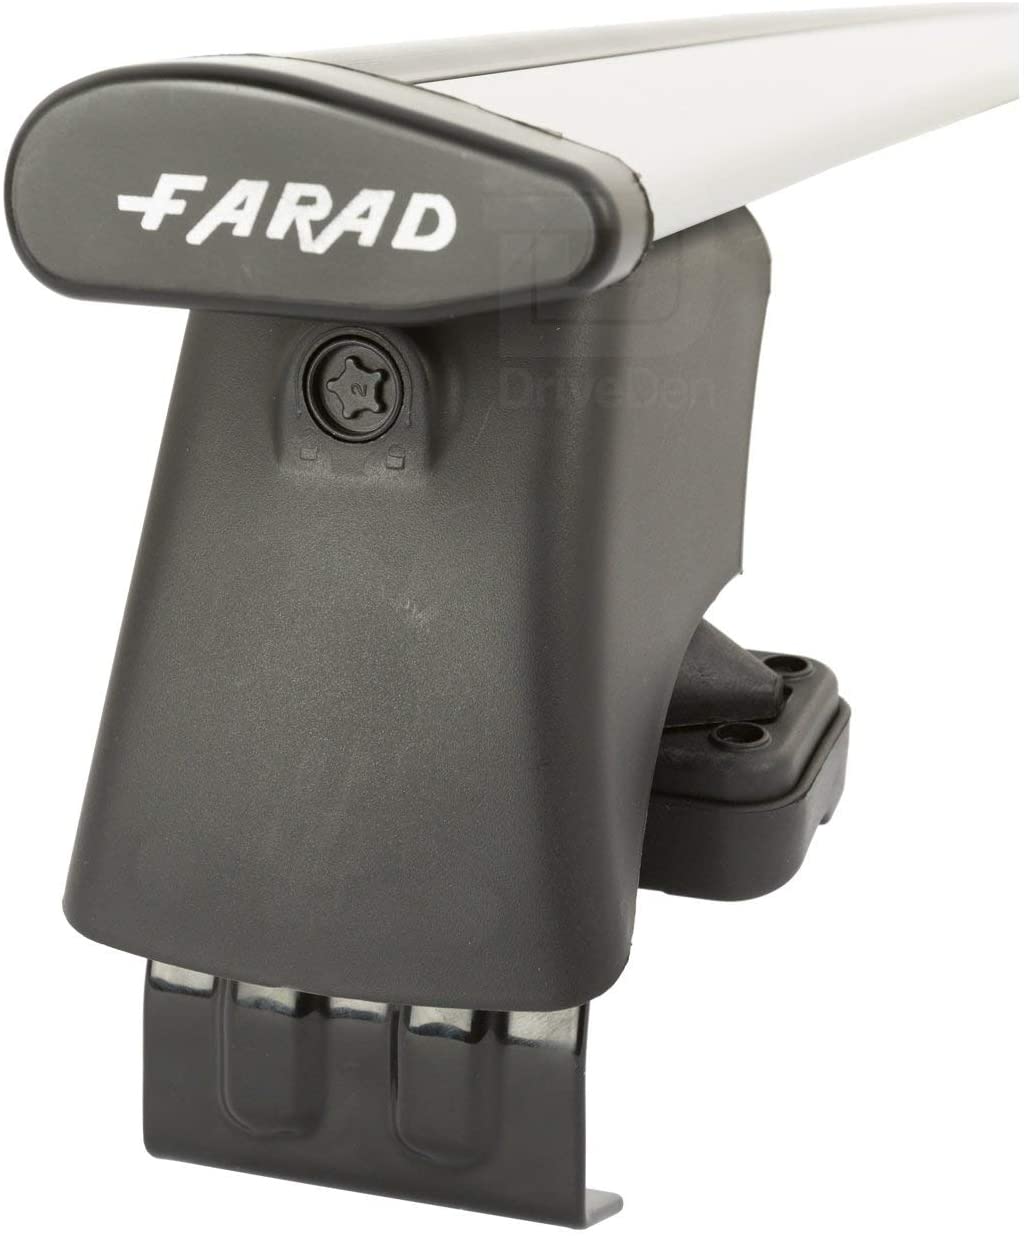 FARAD-Kit H2 per barre portatutto - Volvo V50 2004-2012 (senza corrimano)